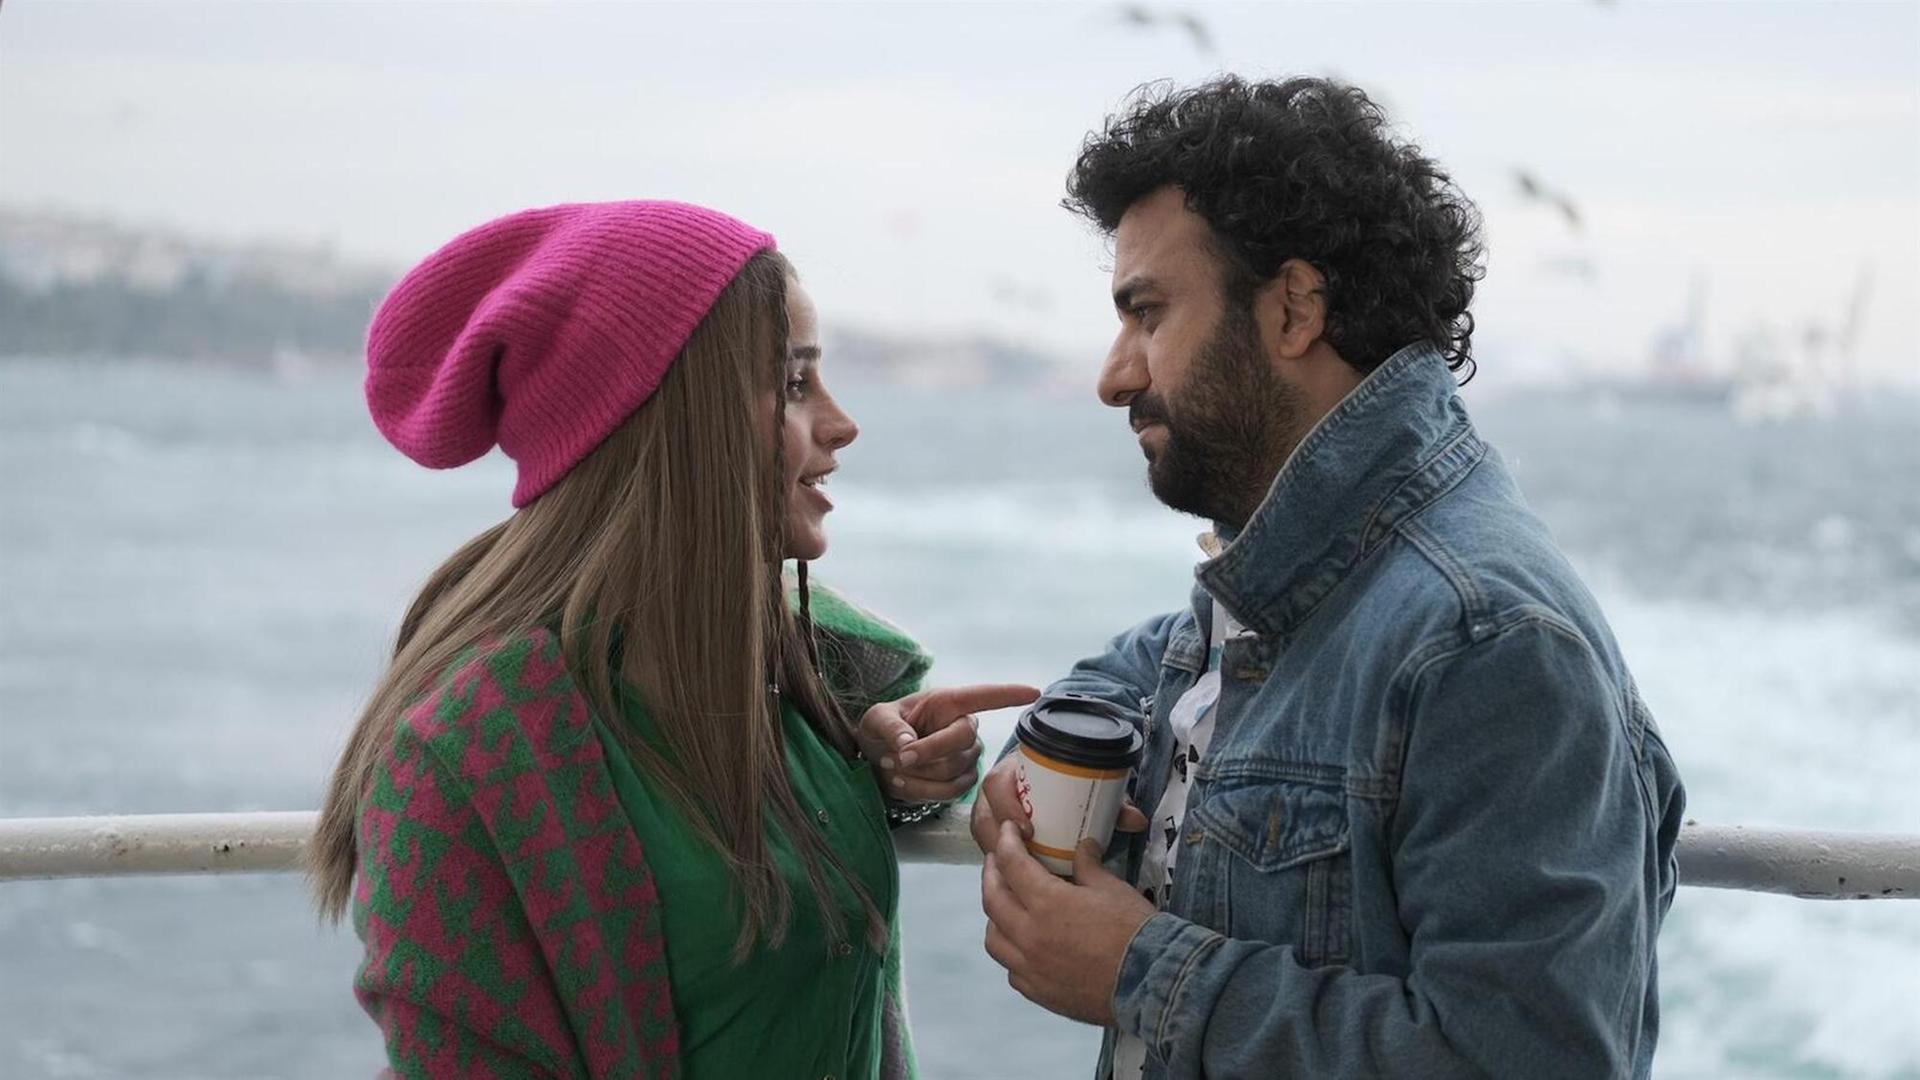 Im Still aus "Çok Aşk" stehen sich eine Frau mit pinker Mütze und ein lockiger Mann mit Kaffeebecher in der Hand gegenüber, während sie spricht und er sie betreten anschaut.